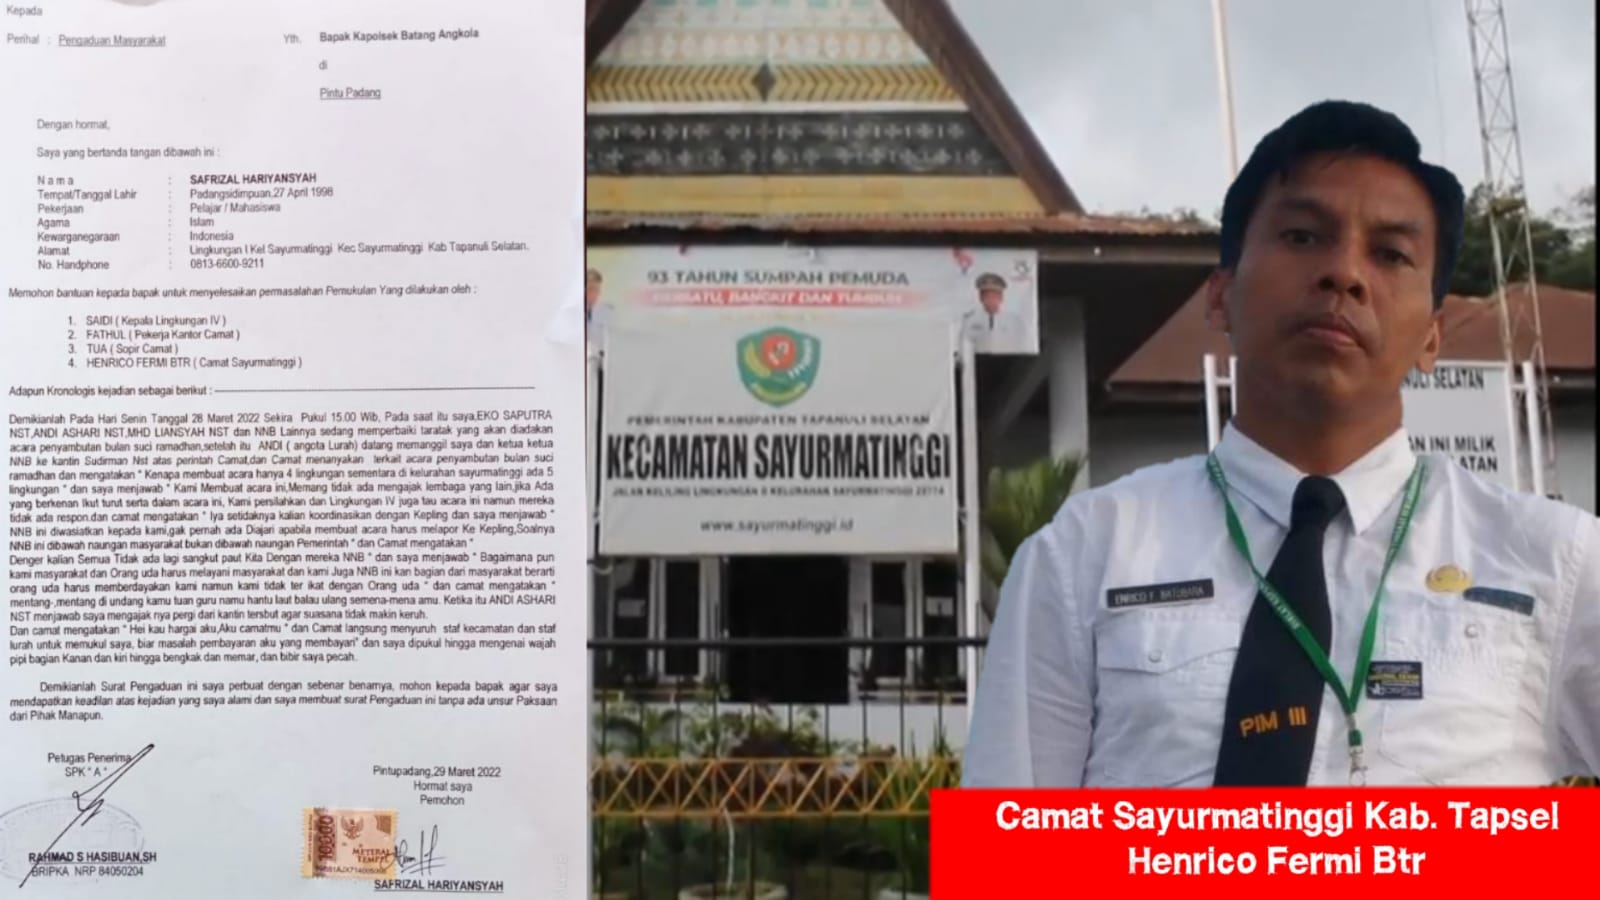 Staf Kantor Camat Diduga Aniaya Panitia Bulan Ramadhan, Kini Dilapor ke Polisi